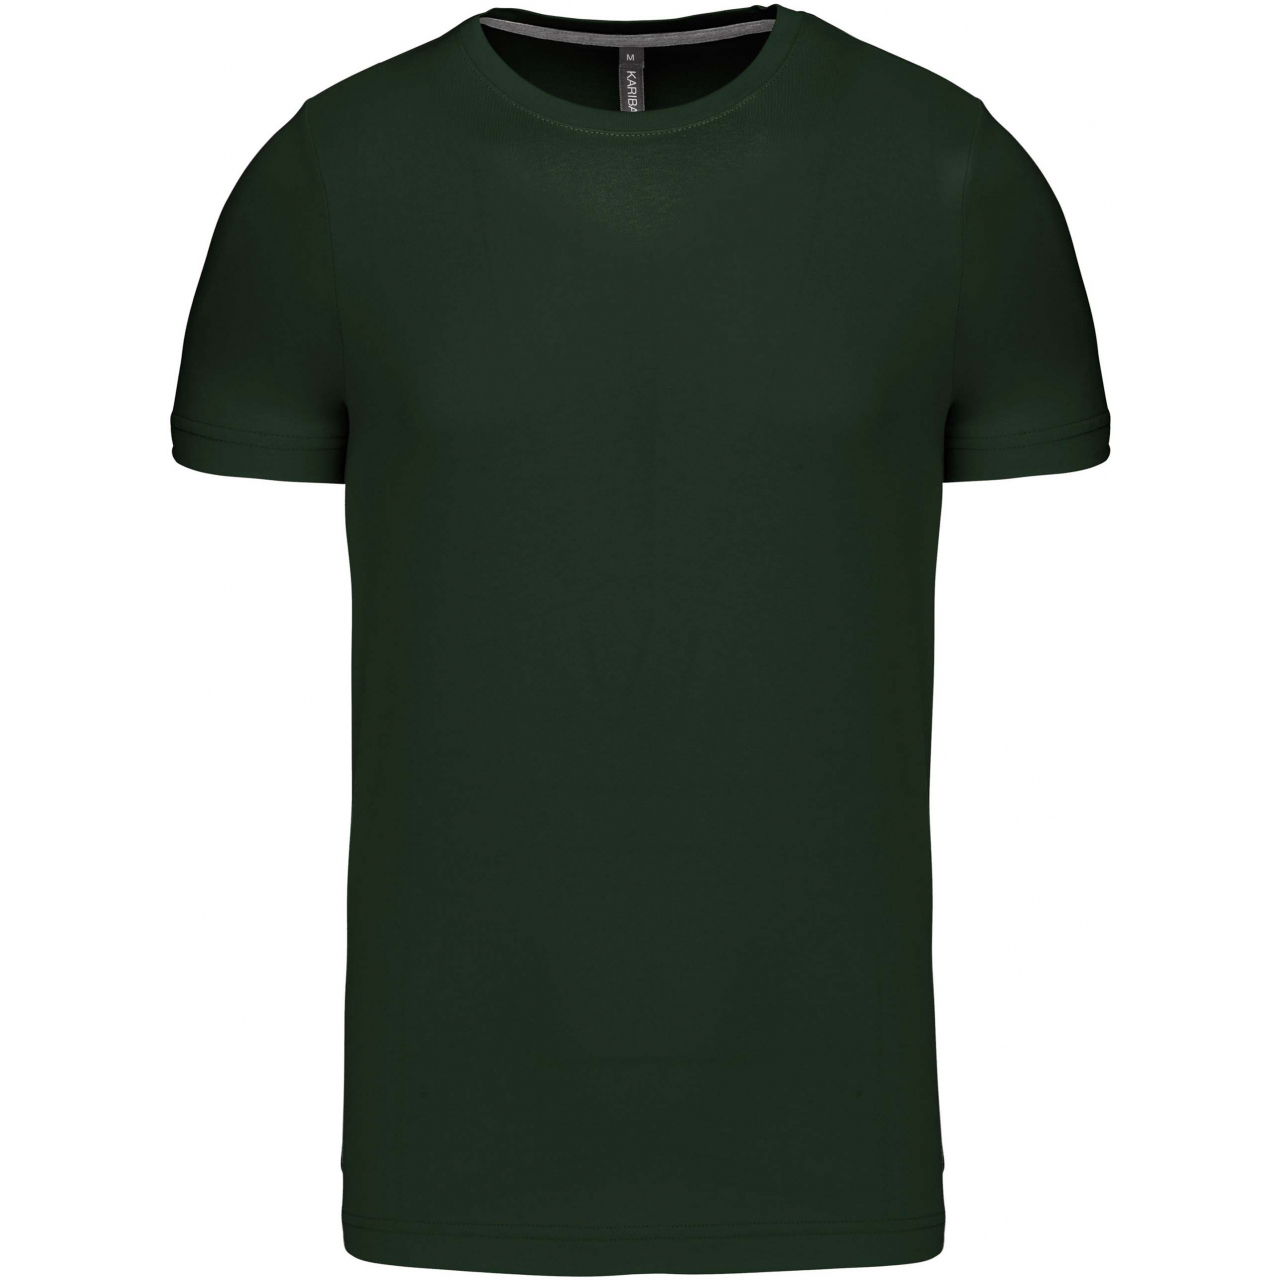 Pánské tričko Kariban krátký rukáv - tmavě zelené, S